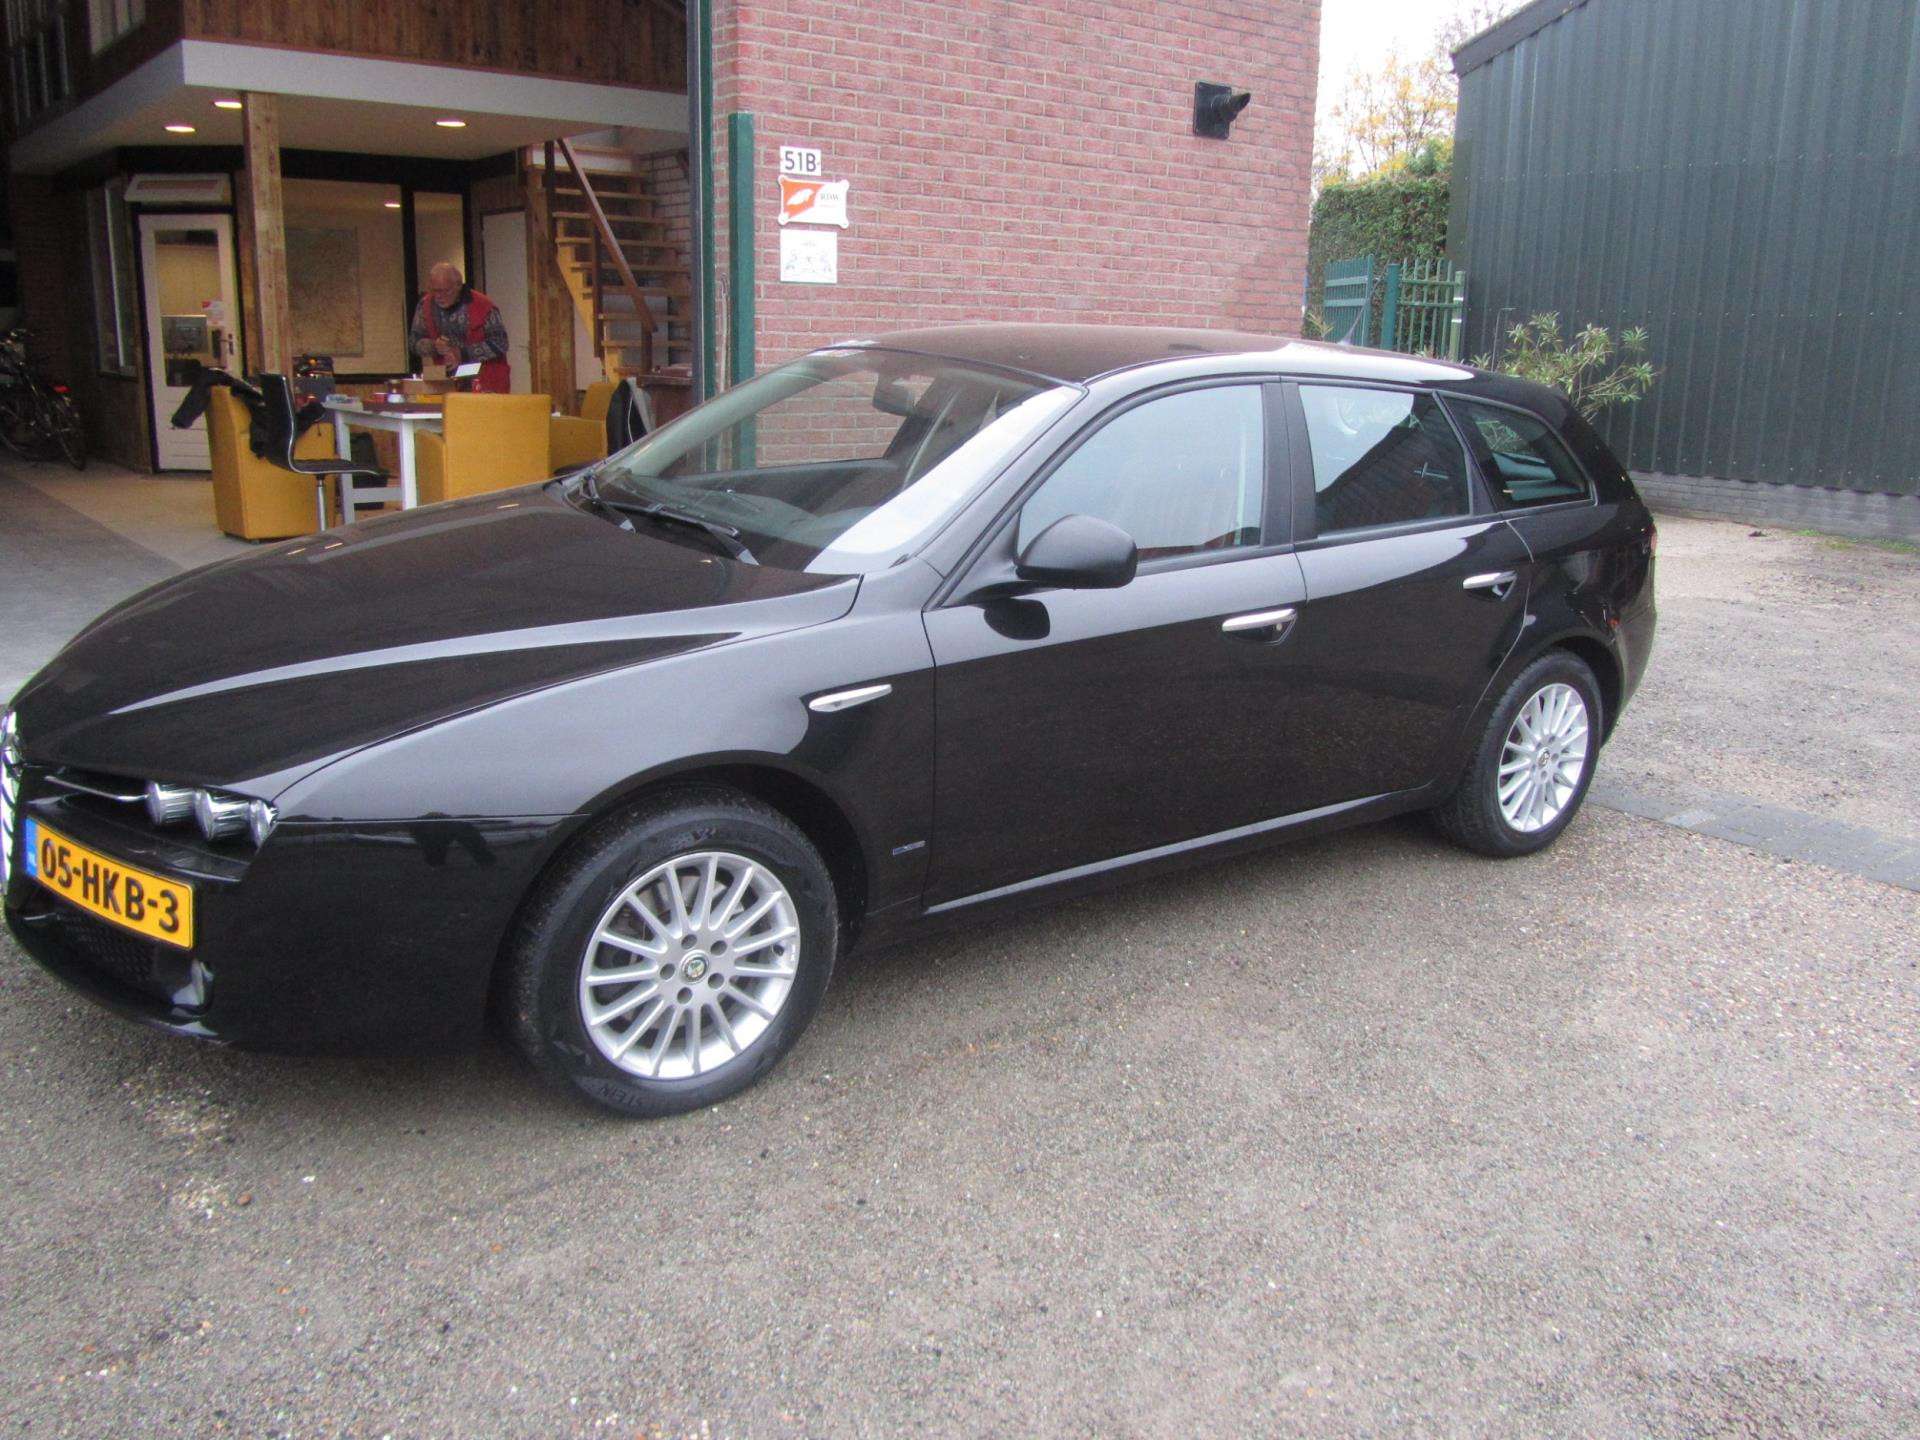 Alfa Romeo 159 Station wagon in Black used in HAELEN for € 4,950.-